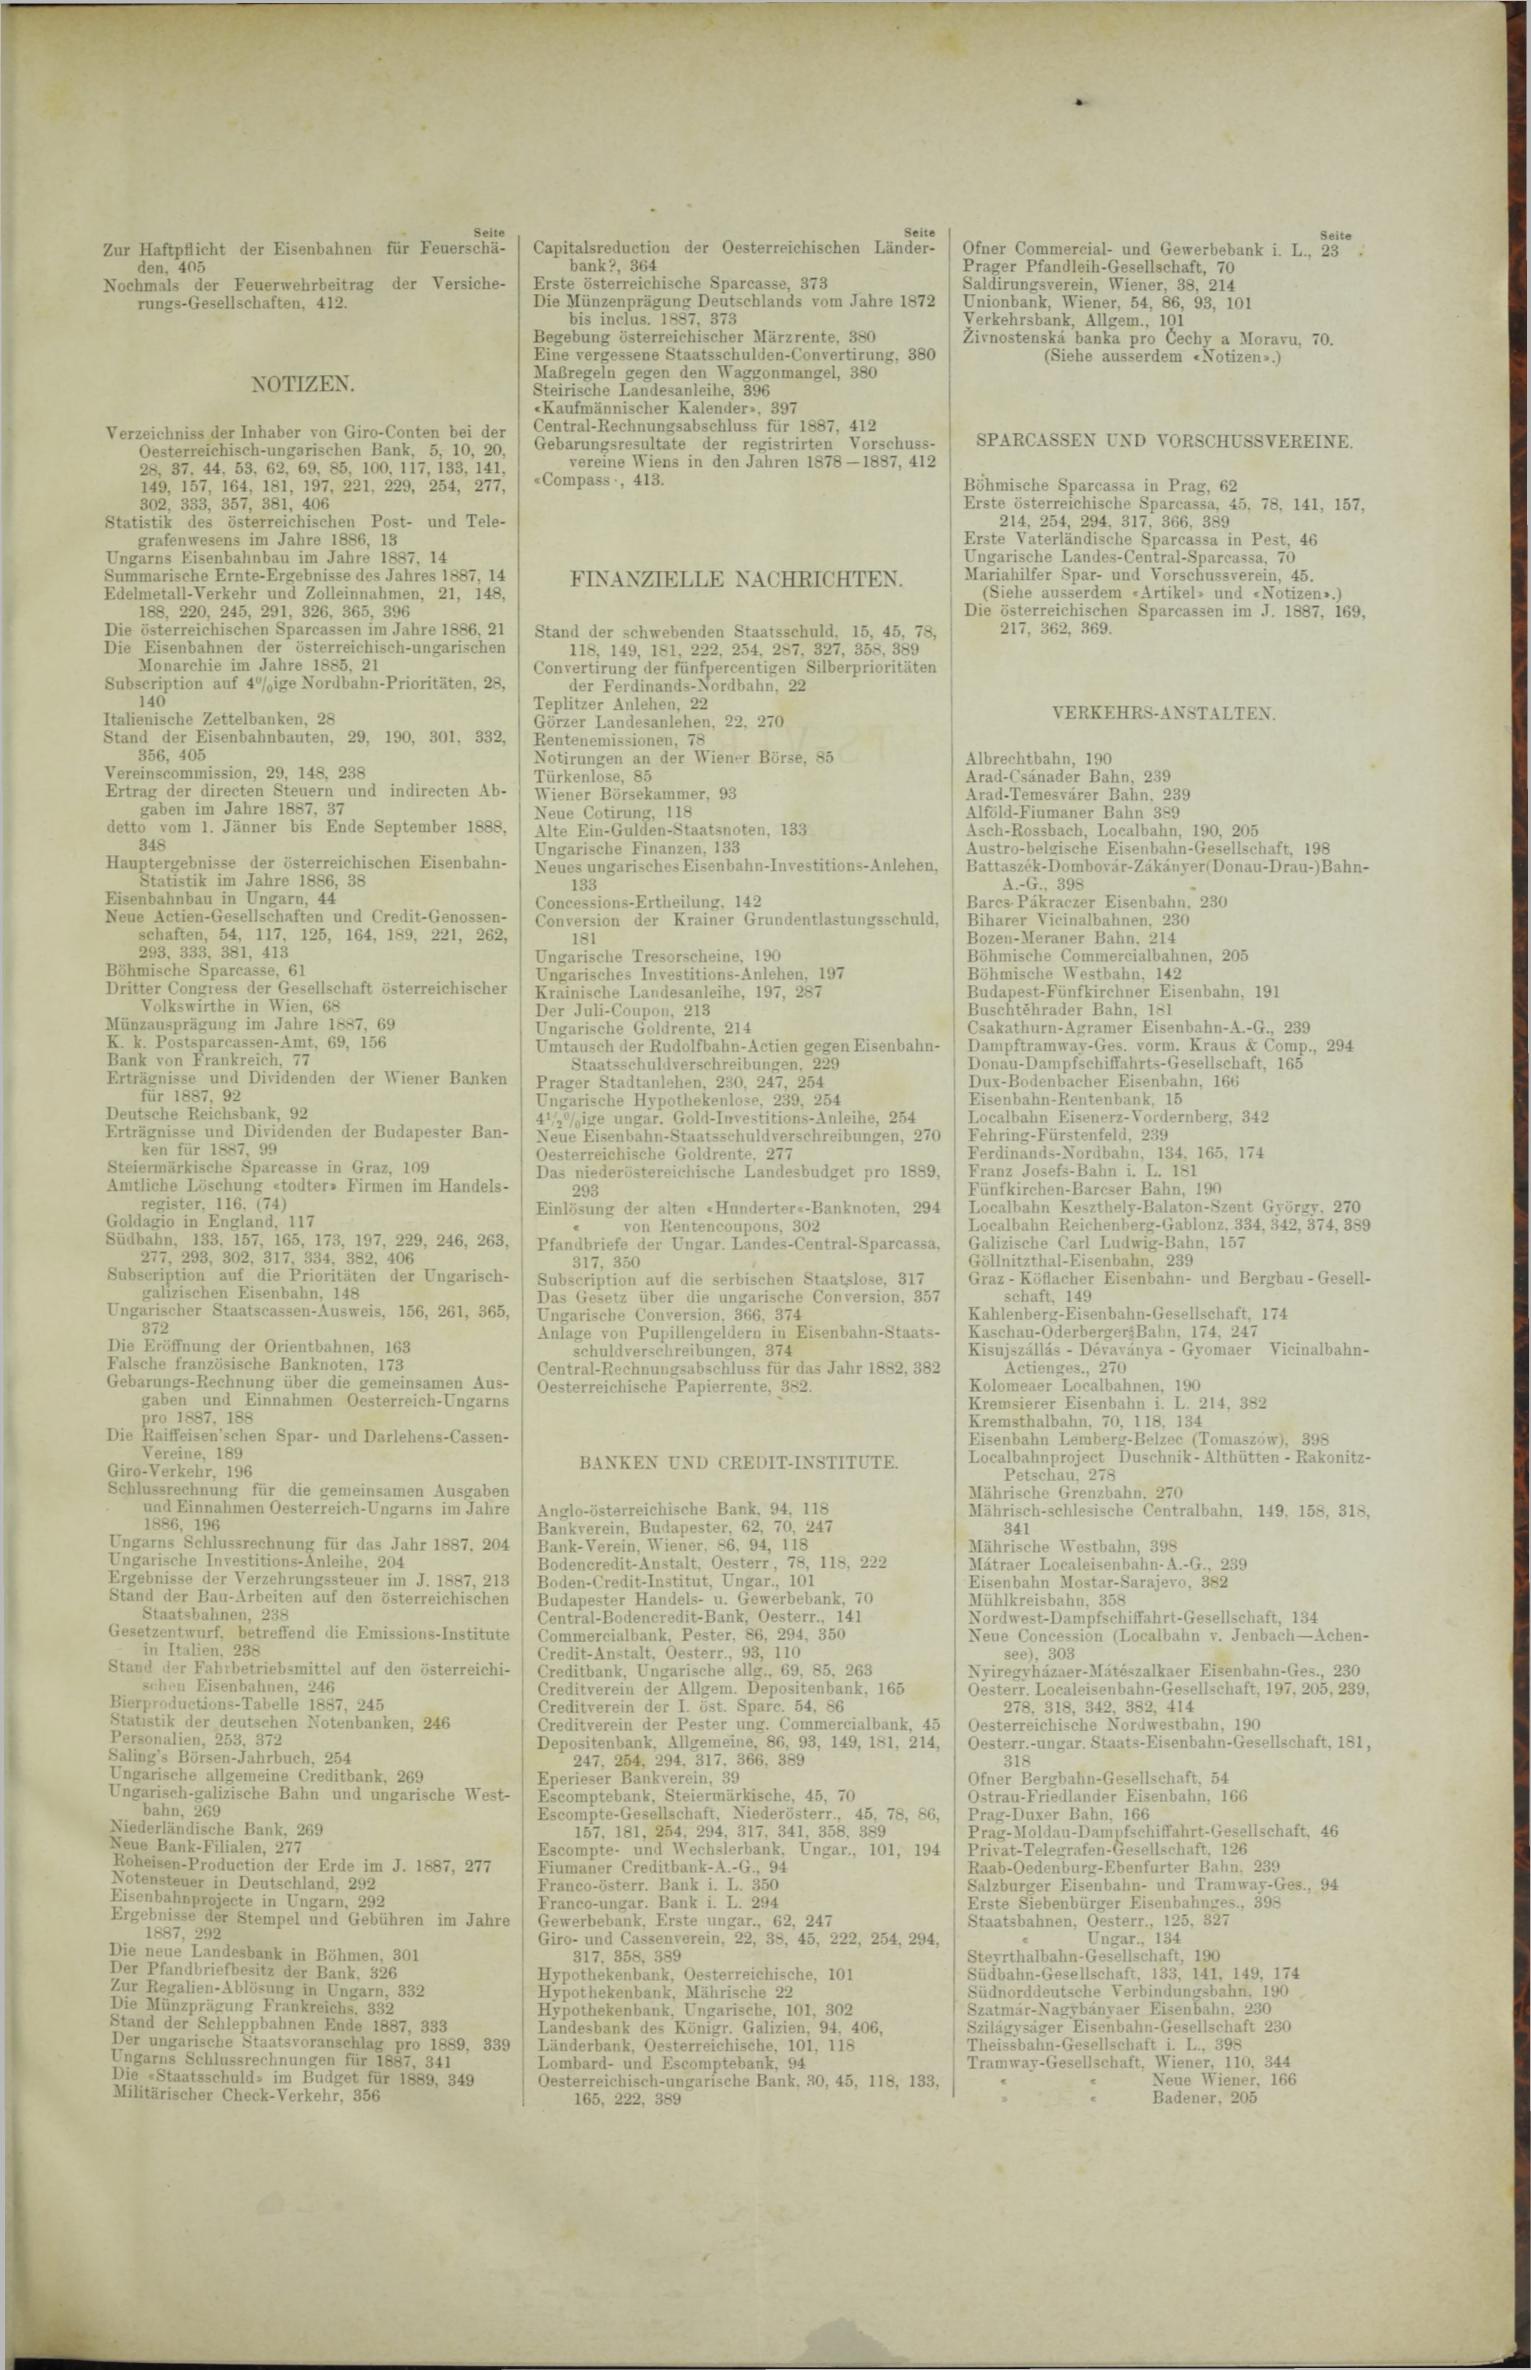 Der Tresor 28.06.1888 - Seite 11